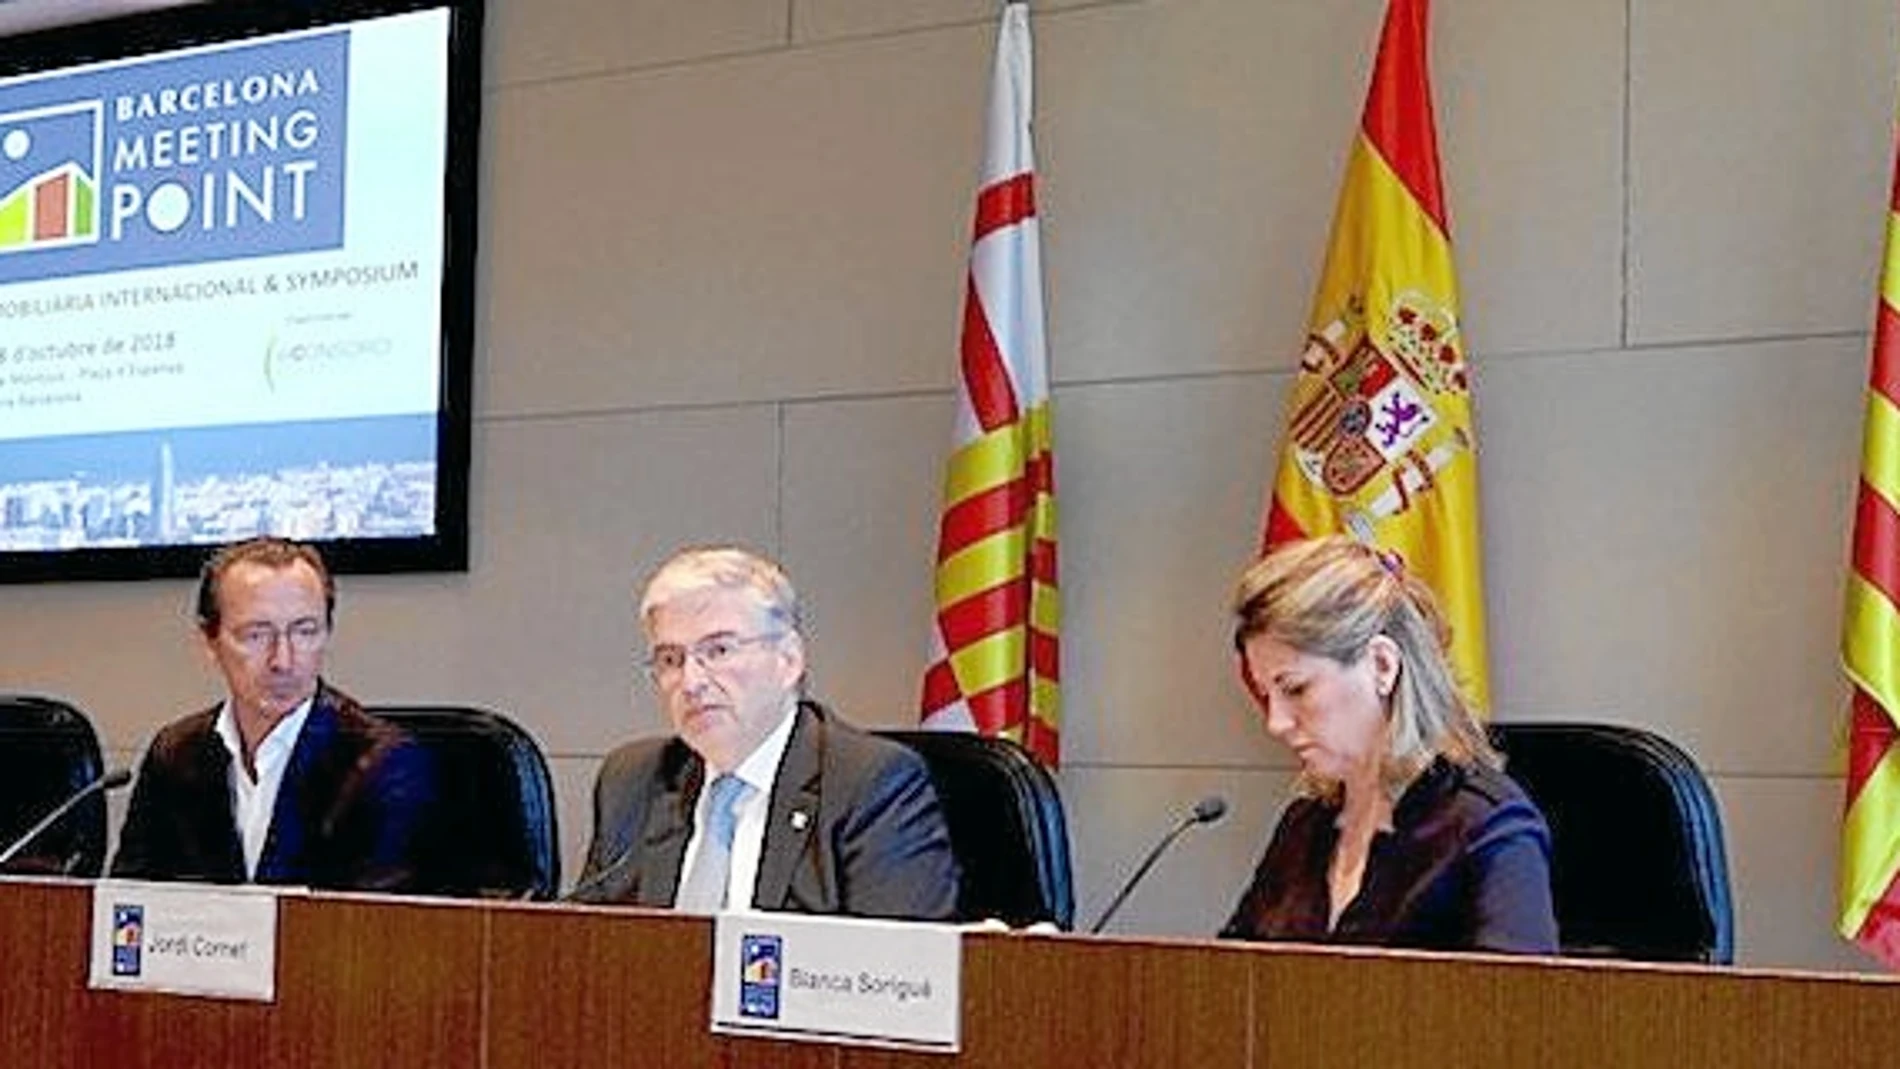 El presidente del BMP, Jordi Cornet, junto a la nueva directora general, Blanca Sorigué